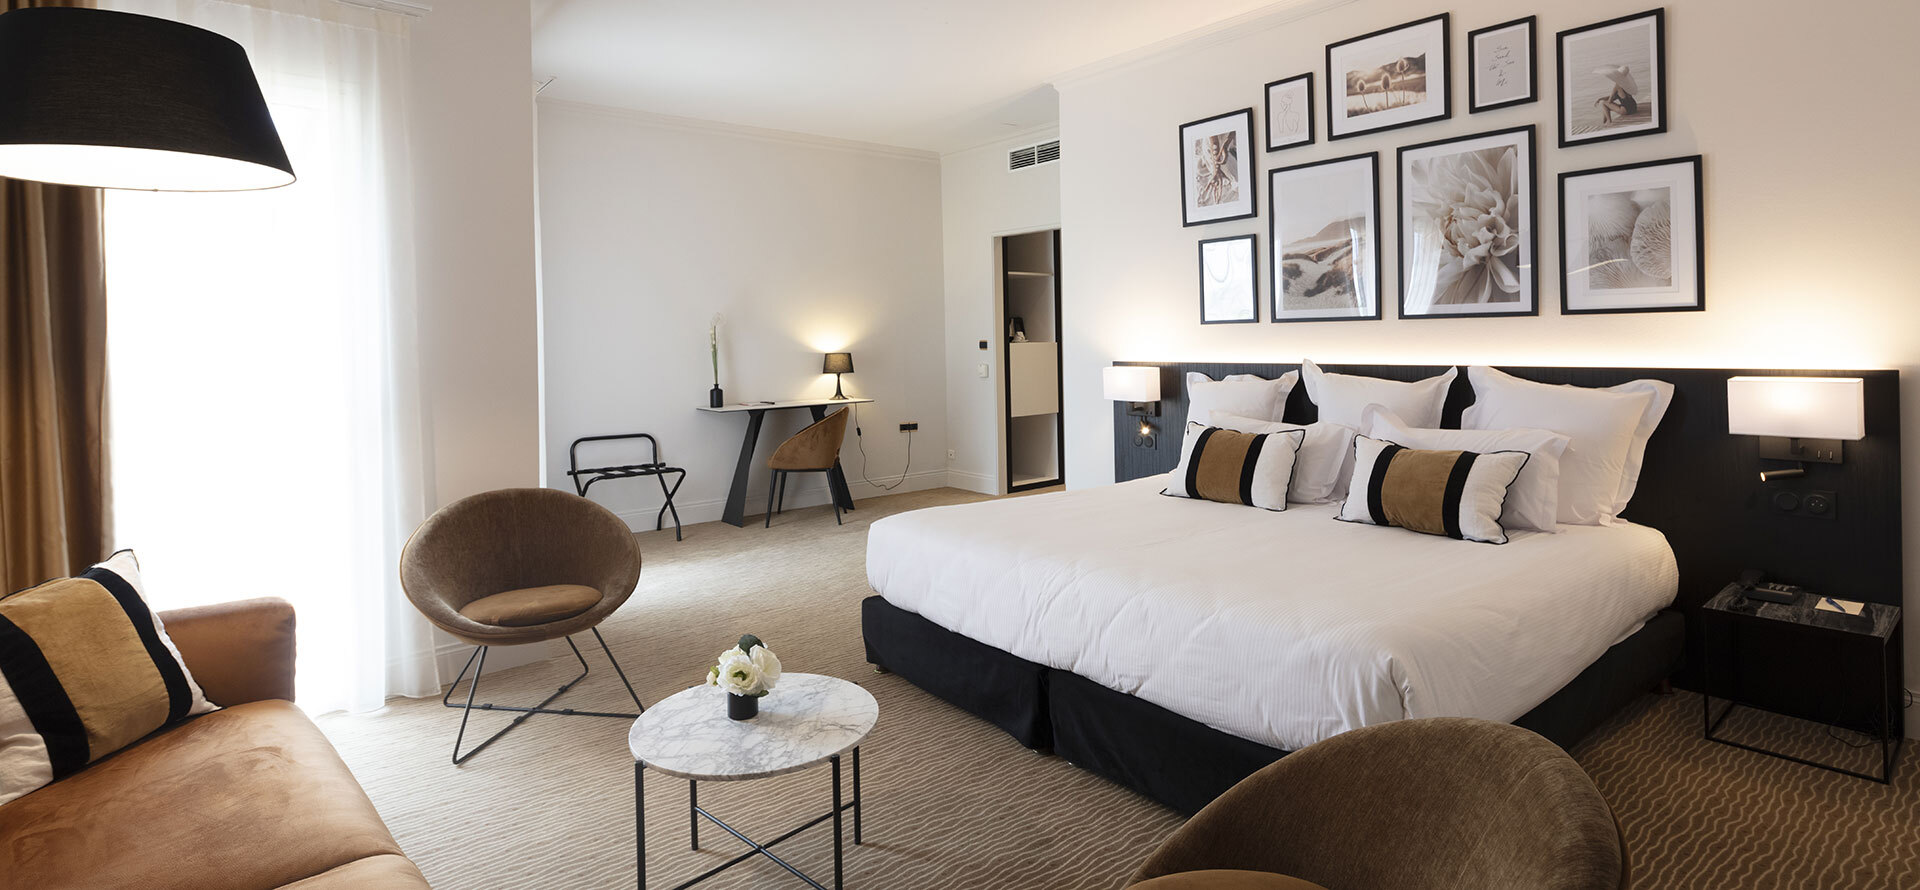 Badezimmer der Suiten des Hotels Palmyra Golf in Le Cap d’Agde in Okzitanien.